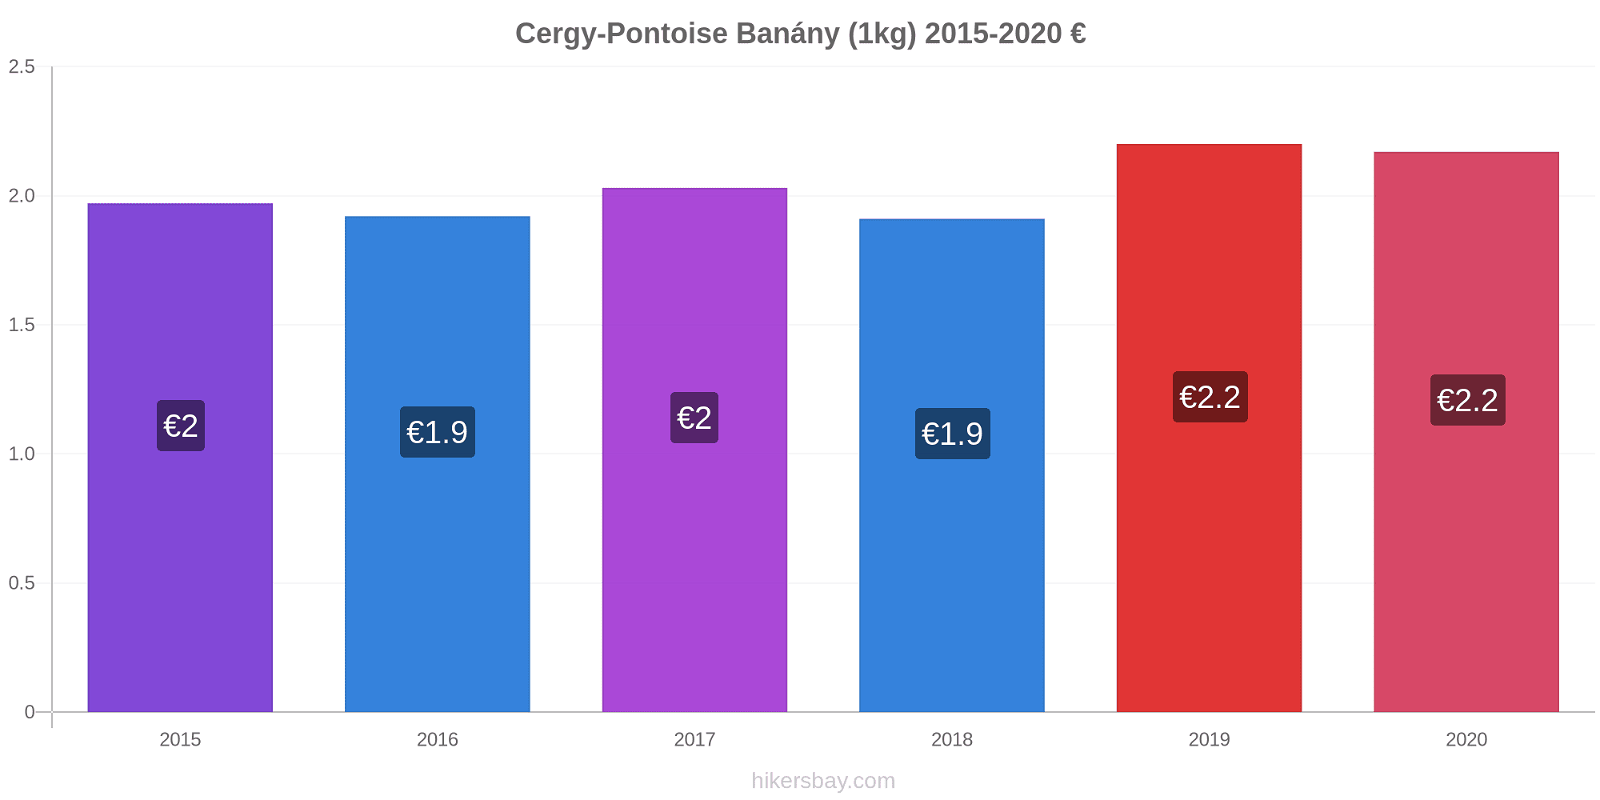 Cergy-Pontoise změny cen Banány (1kg) hikersbay.com